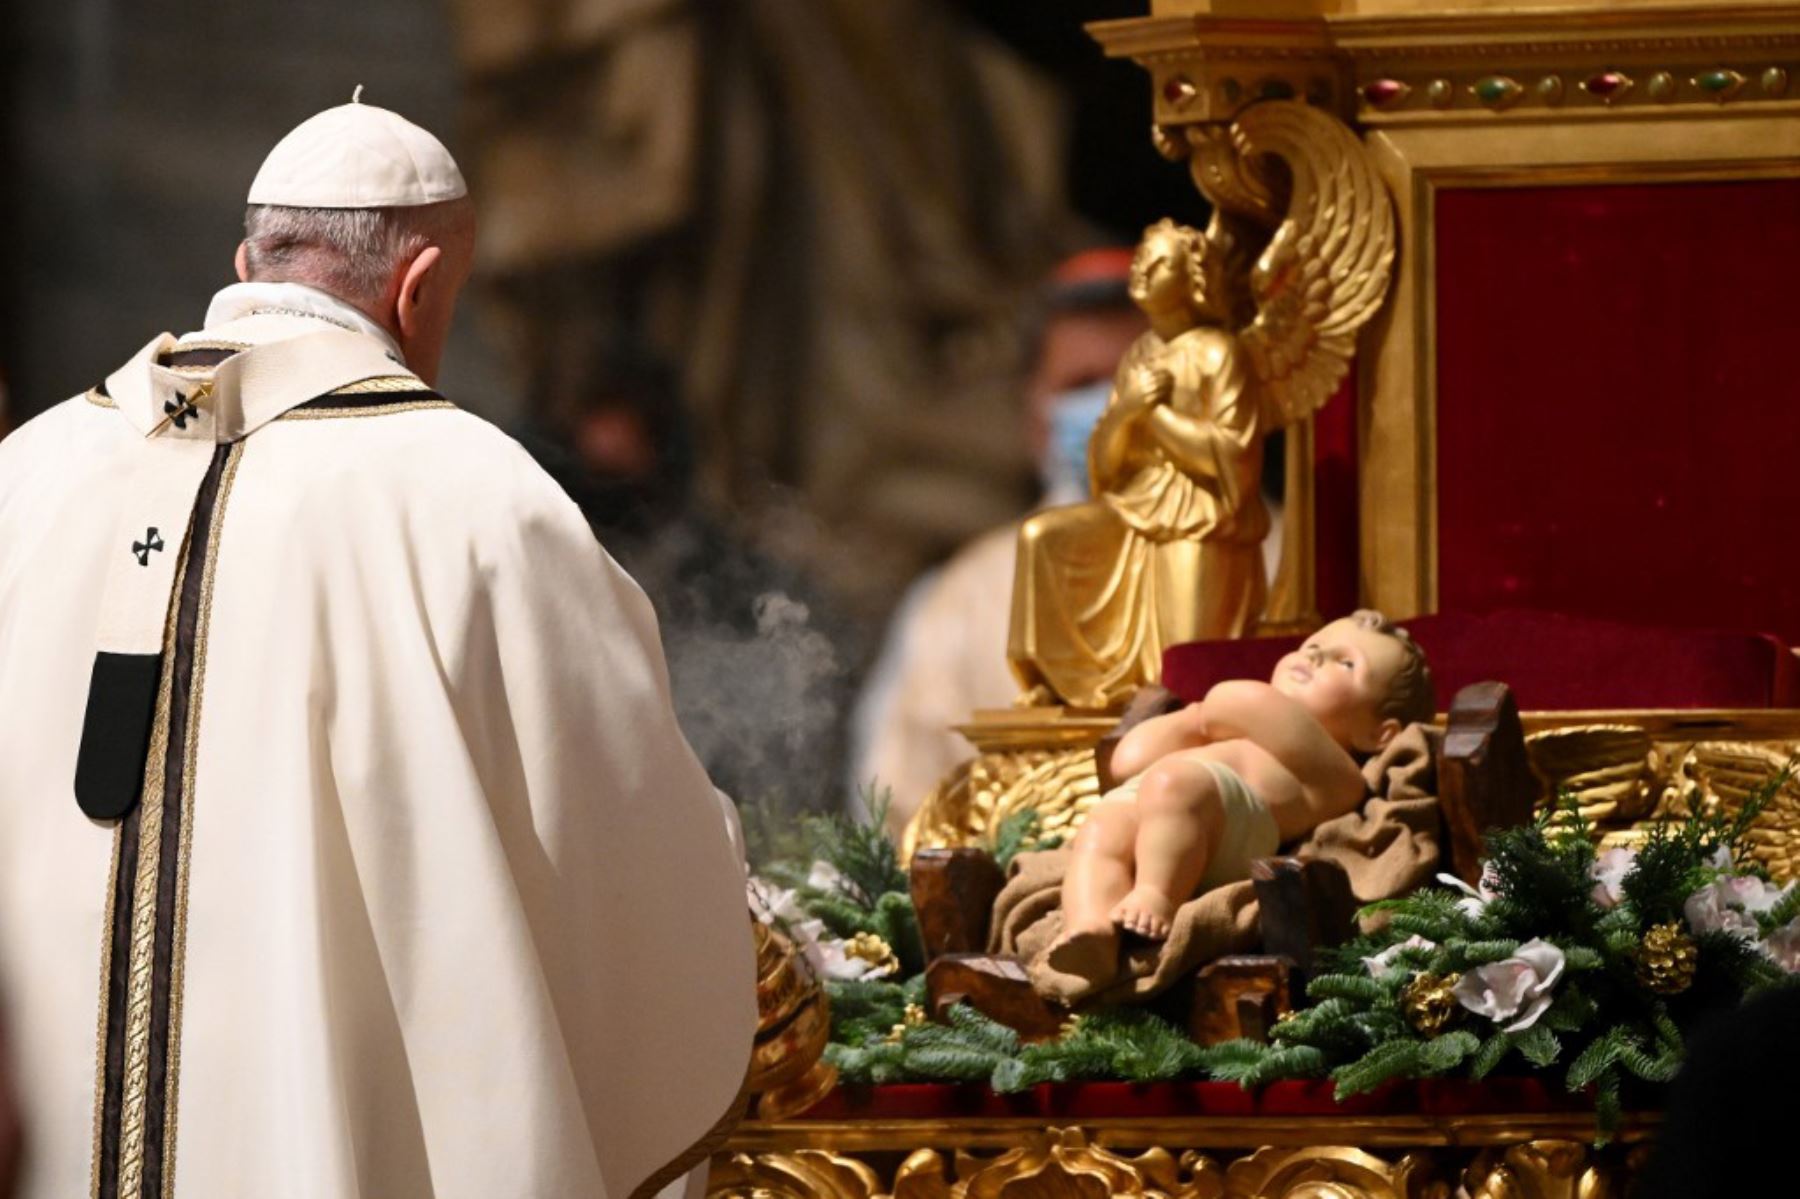 El Papa Francisco sostiene una hostia mientras lleva a cabo el rito de la comunión durante una misa de Nochebuena para conmemorar la natividad de Jesucristo, en la basílica de San Pedro en el Vaticano. Foto: AFP